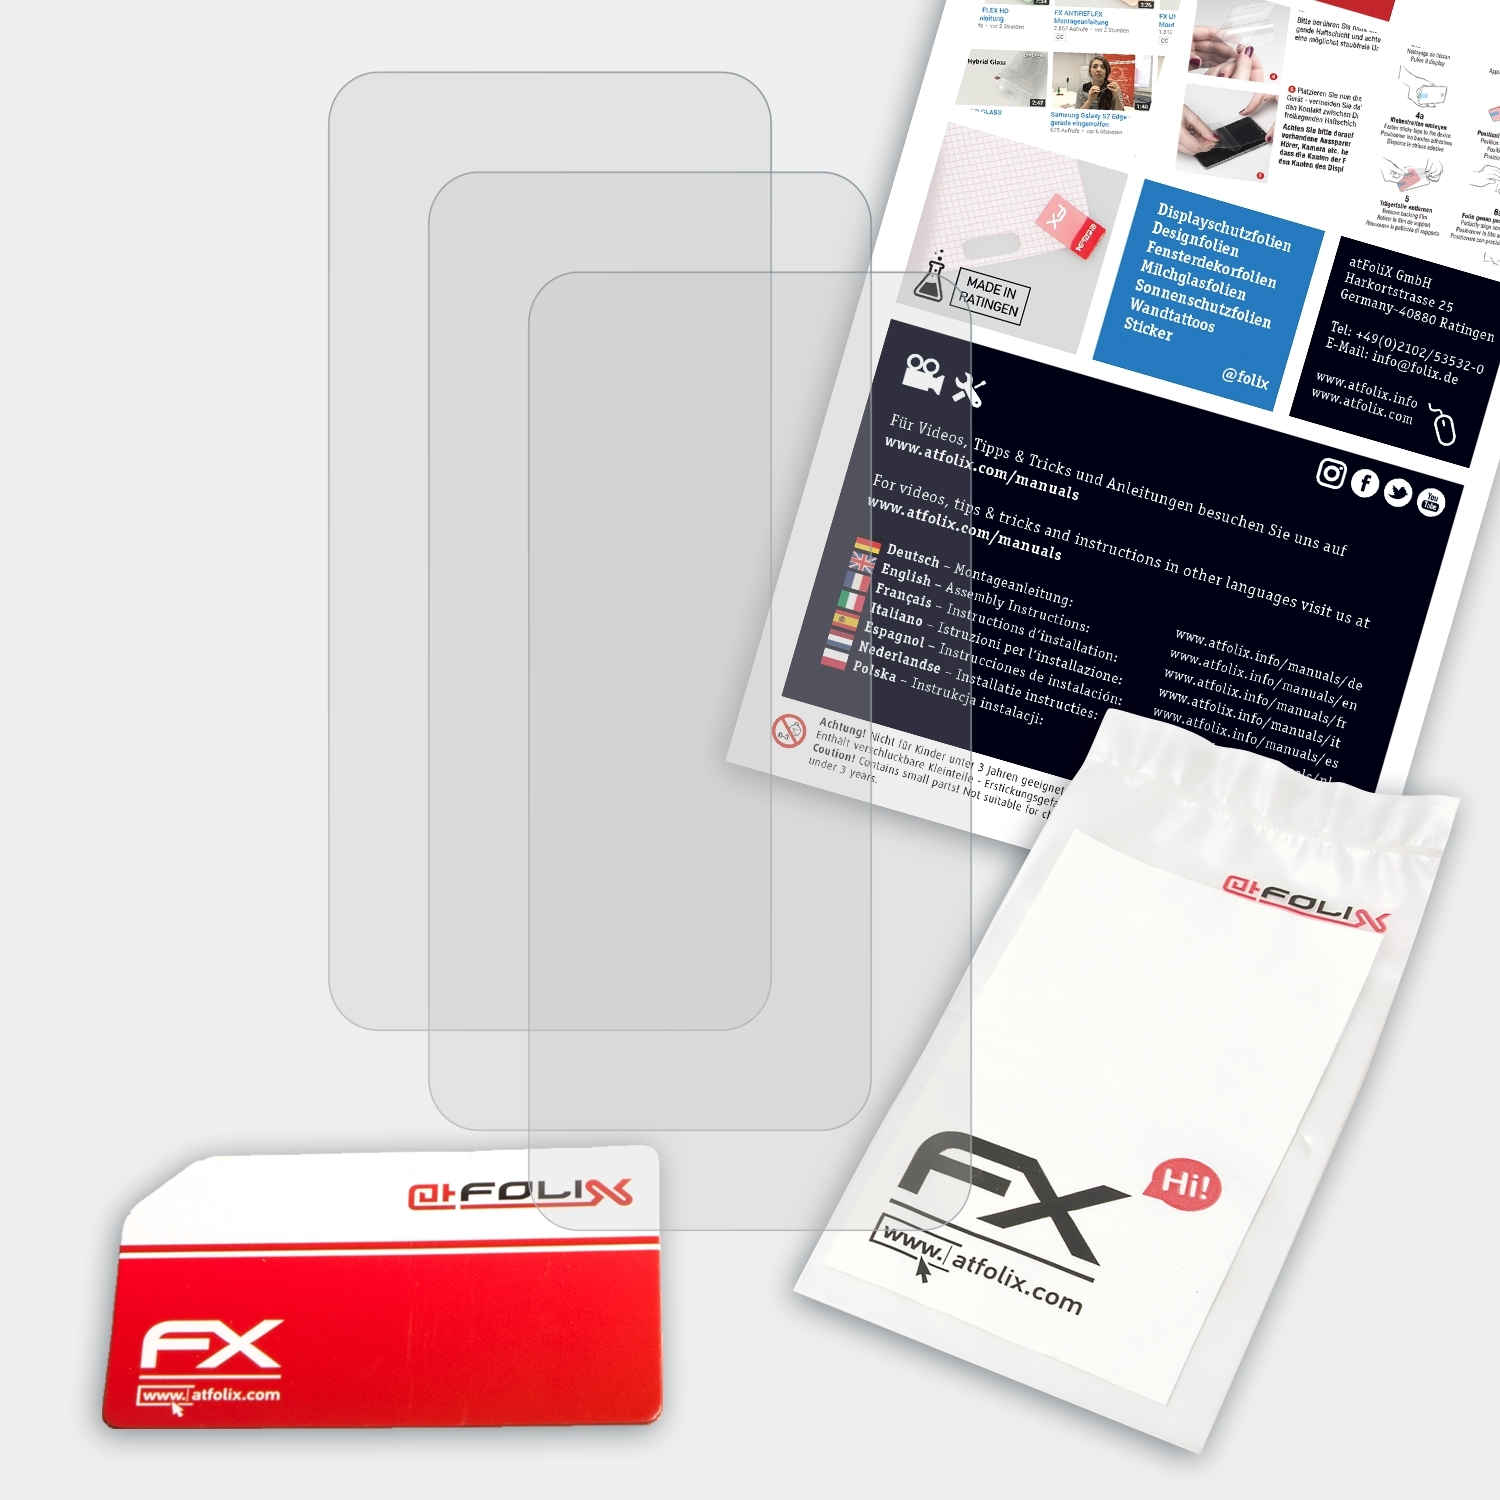 ATFOLIX 3x FX-Antireflex NEX A) Vivo Displayschutz(für